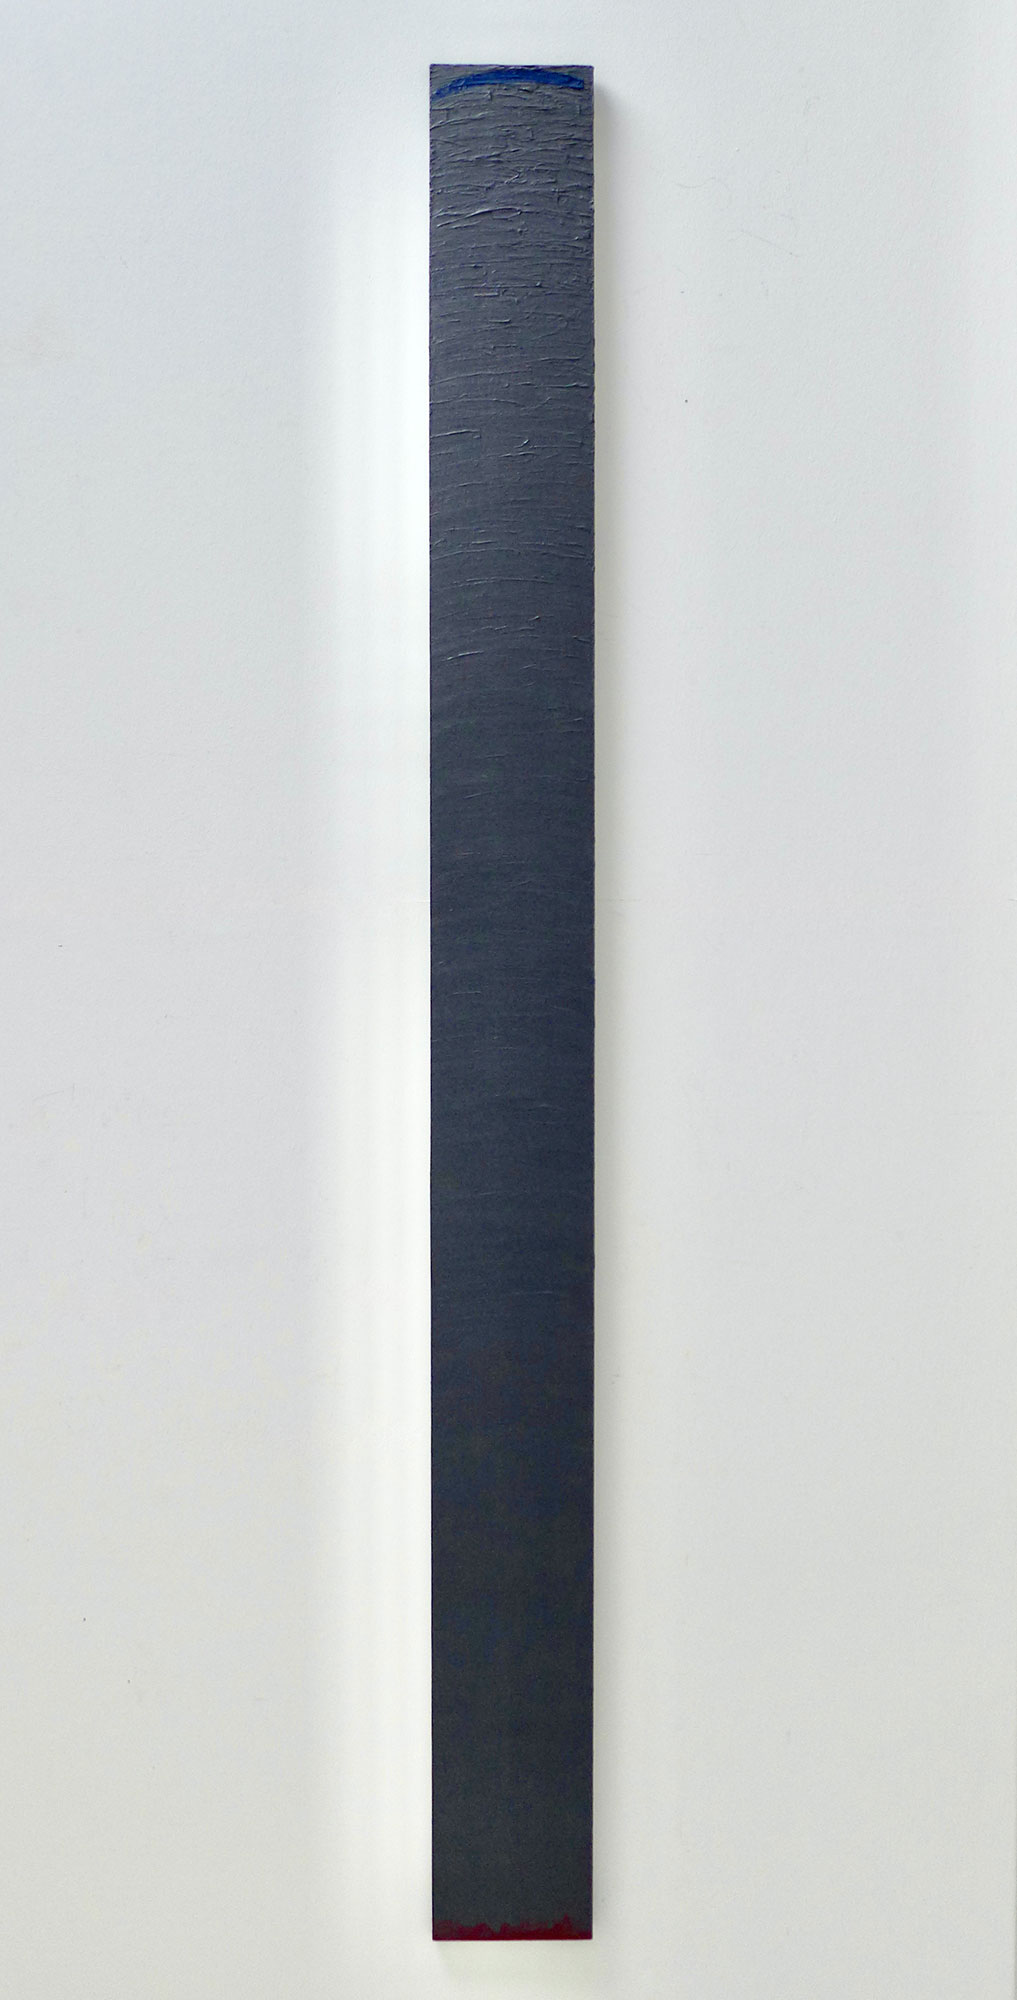 Kenneth Dingwall, Distract, 1977, acrylic on wood, 167.5cm x 15cm